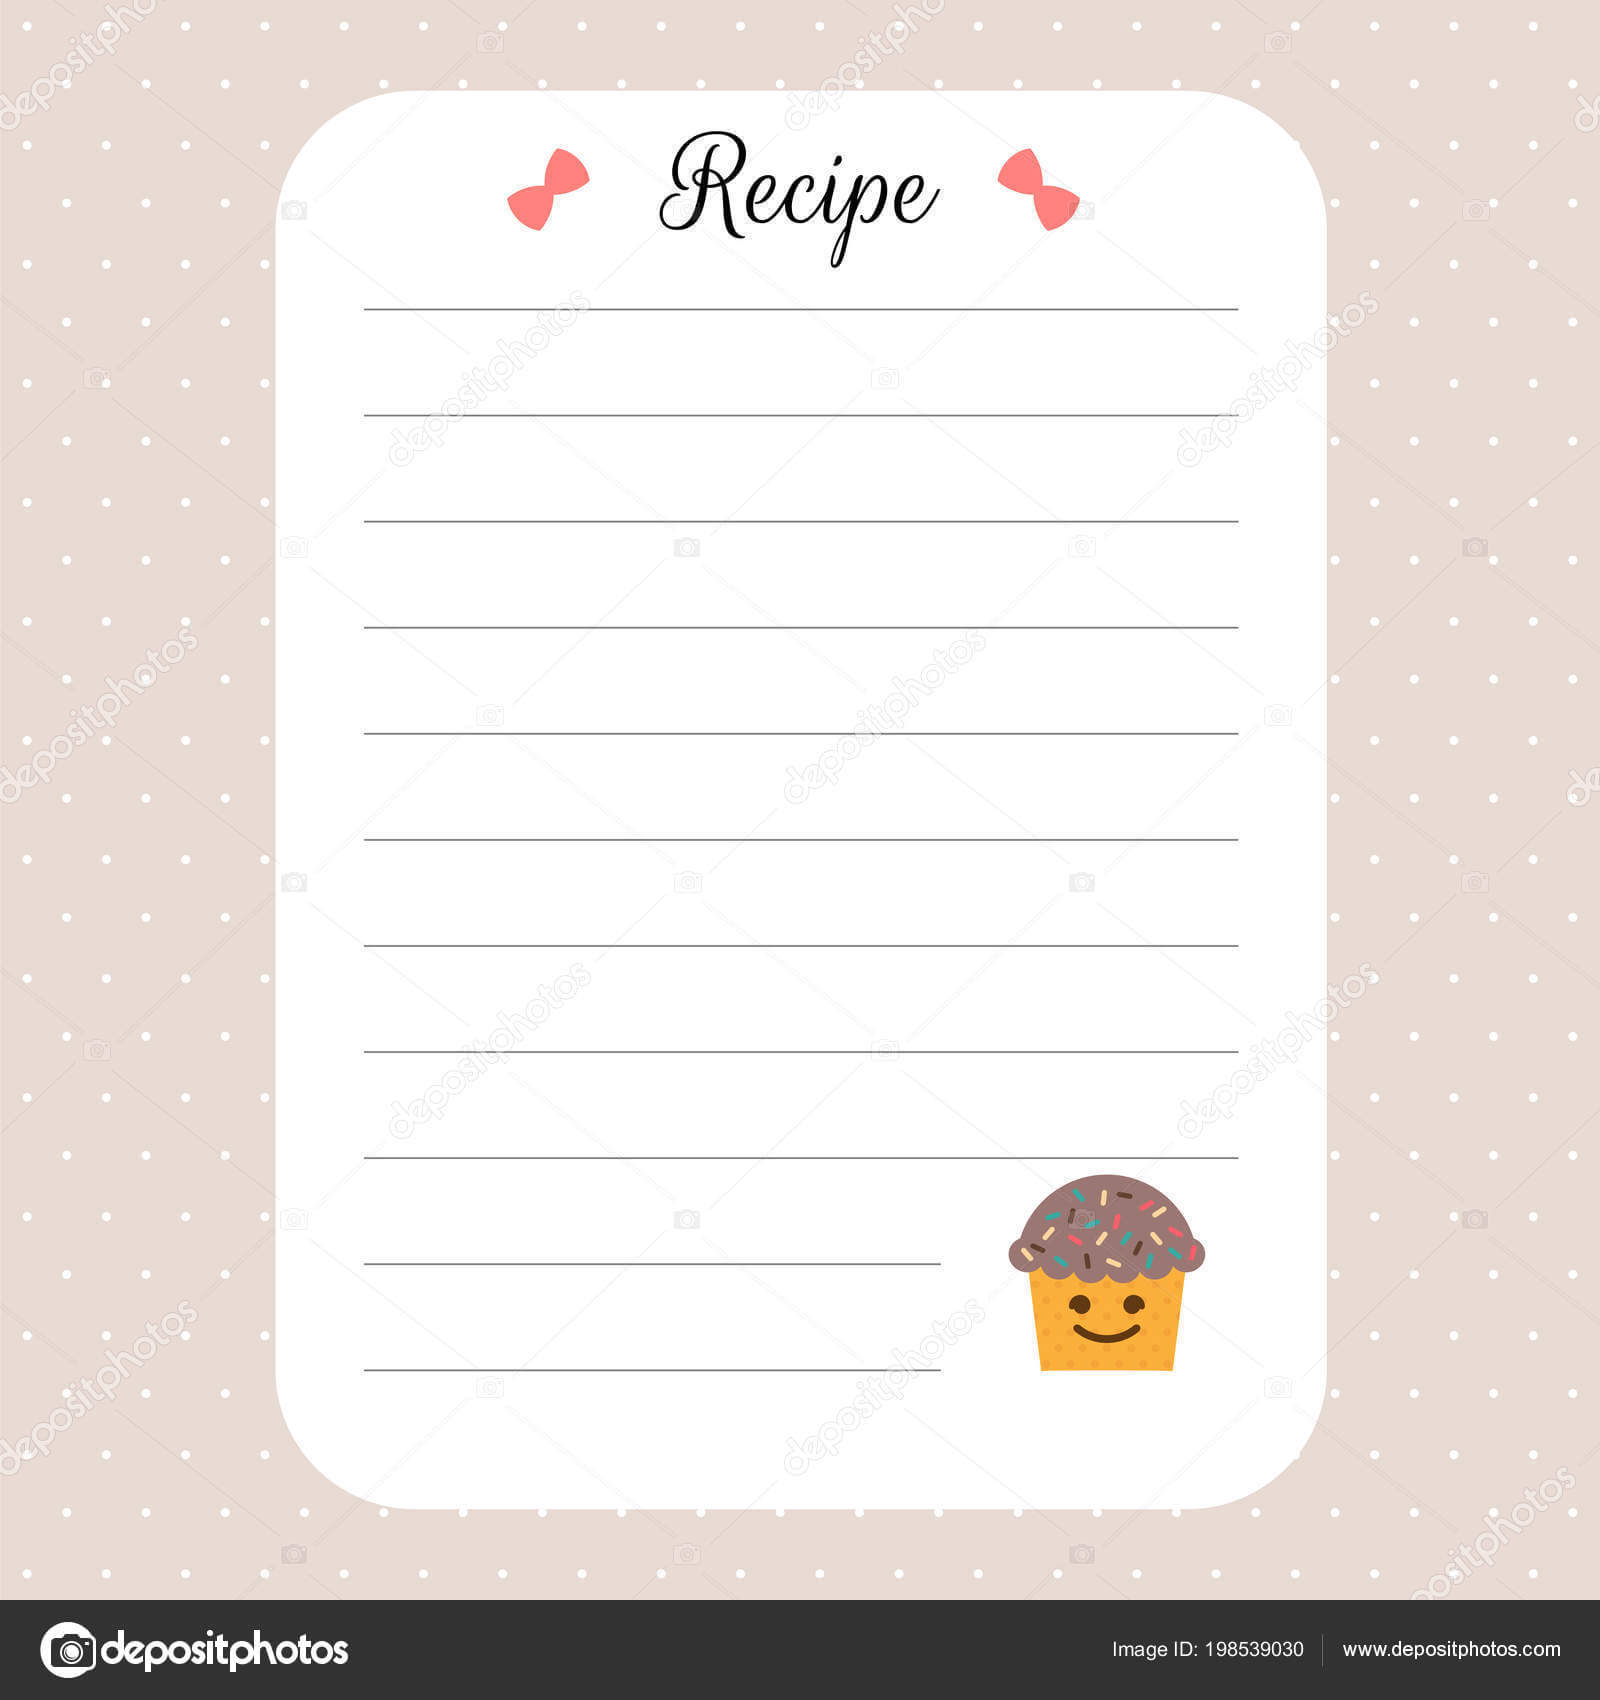 Restaurant Recipe Book Template | Recipe Card Template Inside Restaurant Recipe Card Template